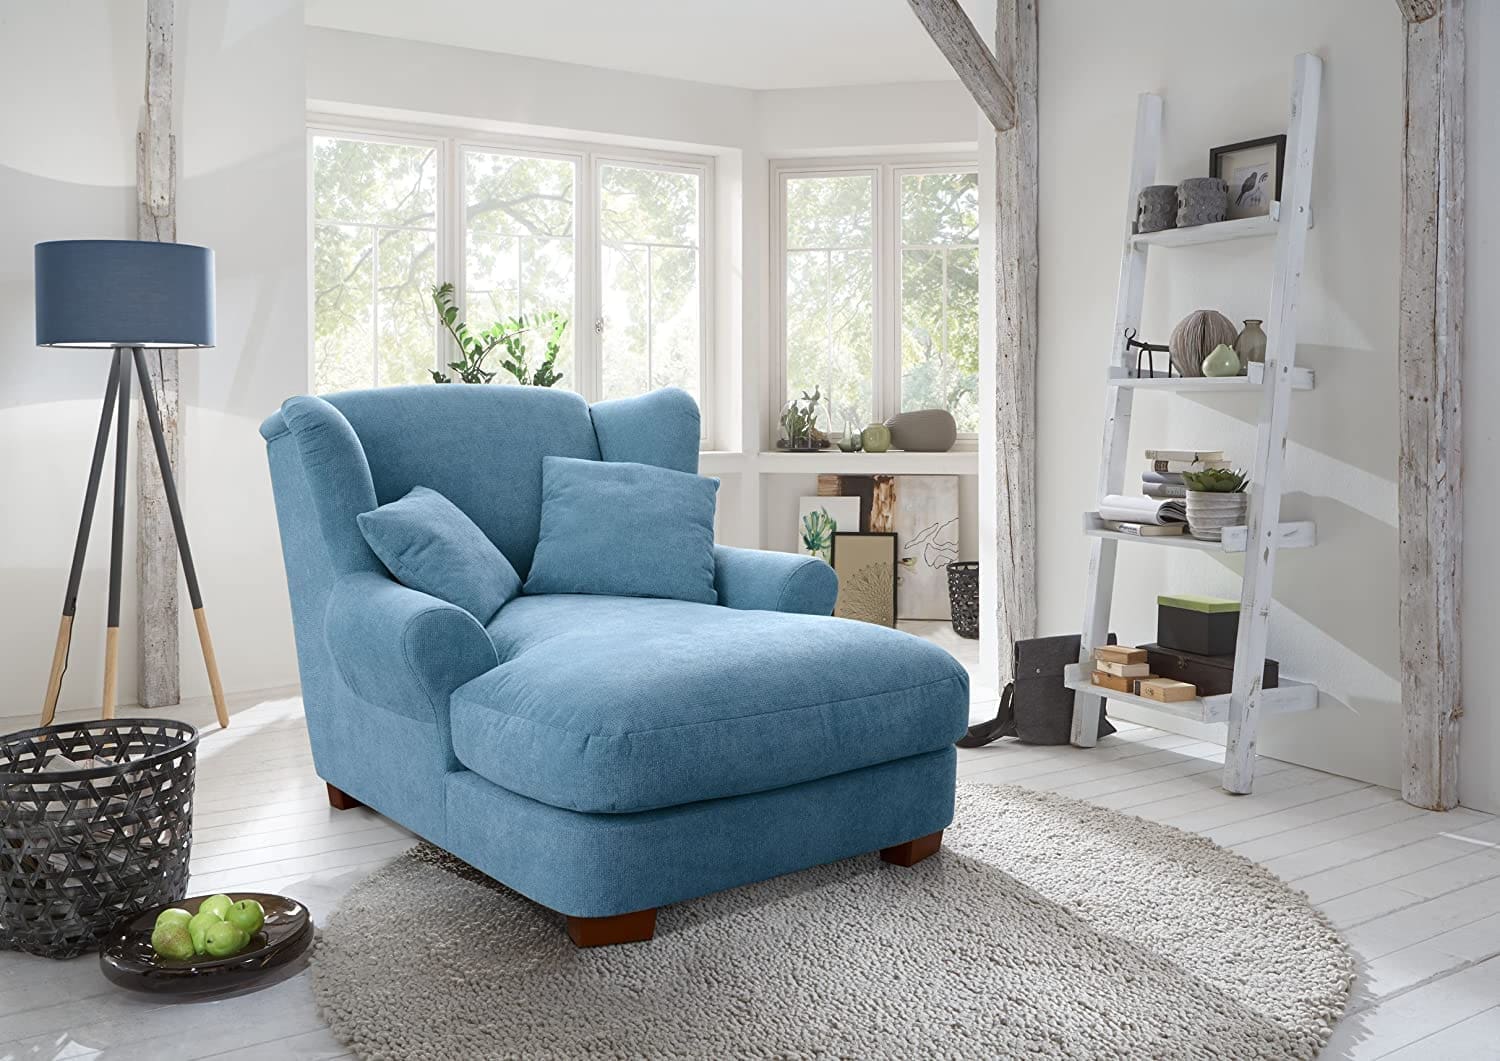 zu Welt die schöner Blau Design Sessel machen um - XXL